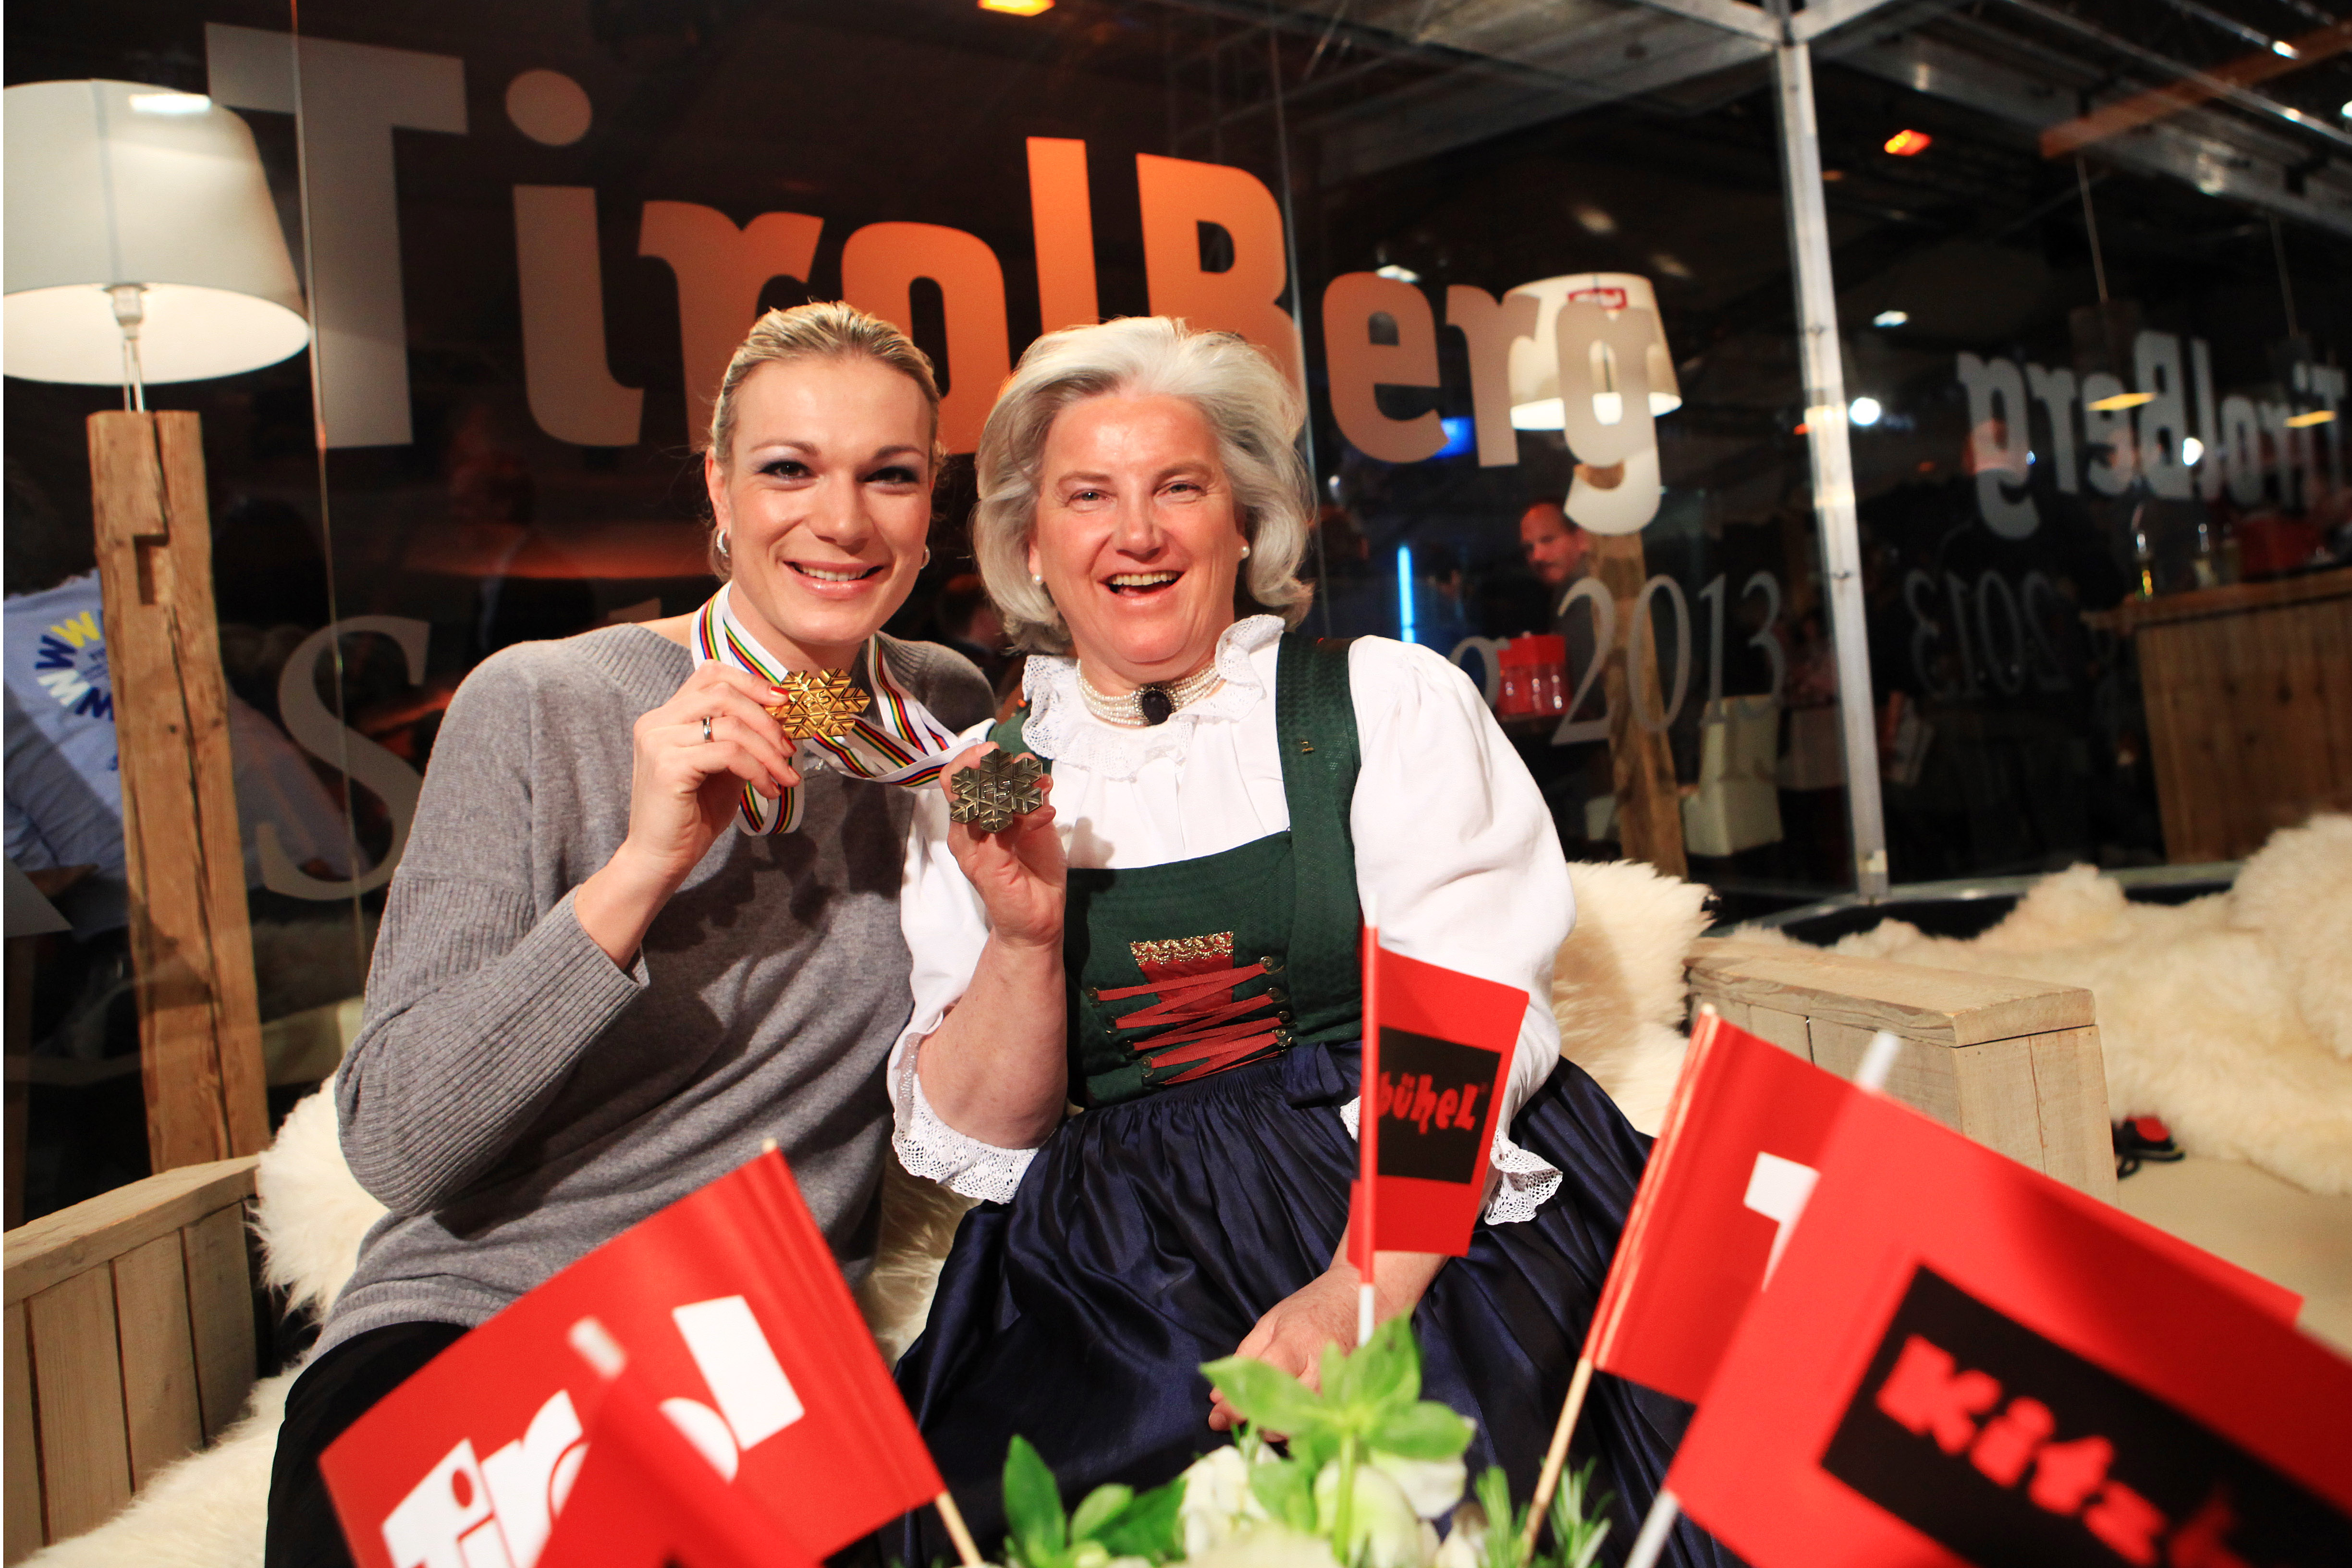 Die Wahl-Kitzbühelerin Maria Höfl-Riesch (li.) ließ es sich nicht nehmen, ihre beiden bisherigen Medaillen im Rahmen der Kitzbühel Night im TirolBerg zu feiern. Signe Reisch (Obfrau Kitzbühel Tourismus) stellte sich als eine der ersten Gratulantinnen ein (Fotos: Tirol Werbung)